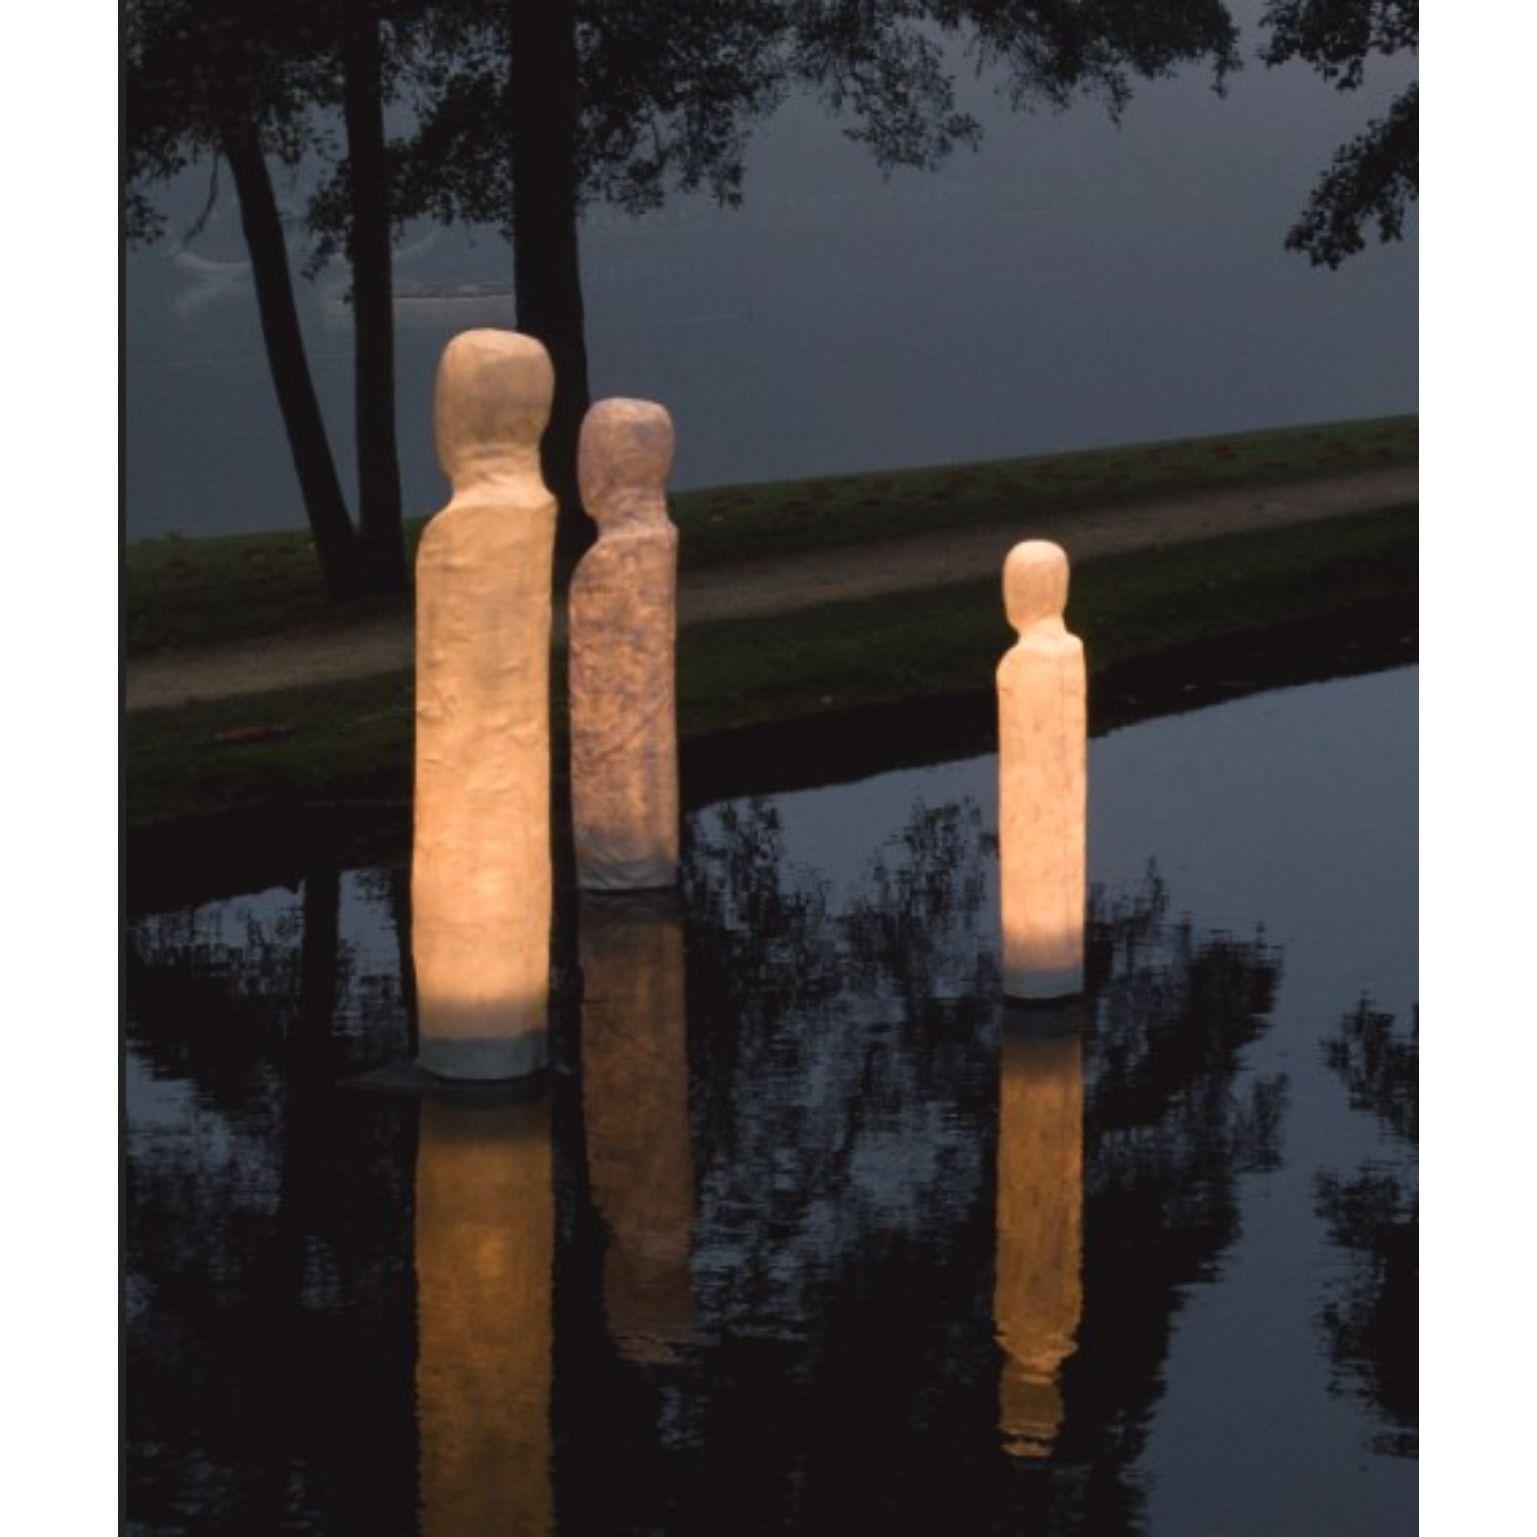 Un ensemble de 3 sculptures lumineuses de la famille Anonymus par l'Atelier Haute Cuisine
Dimensions : 180 x 28 cm, 185 x 34, 210 x 41 cm 
Matériaux : Fibre de verre, couche de finition résistante aux UV et aux intempéries, LED E27, base en